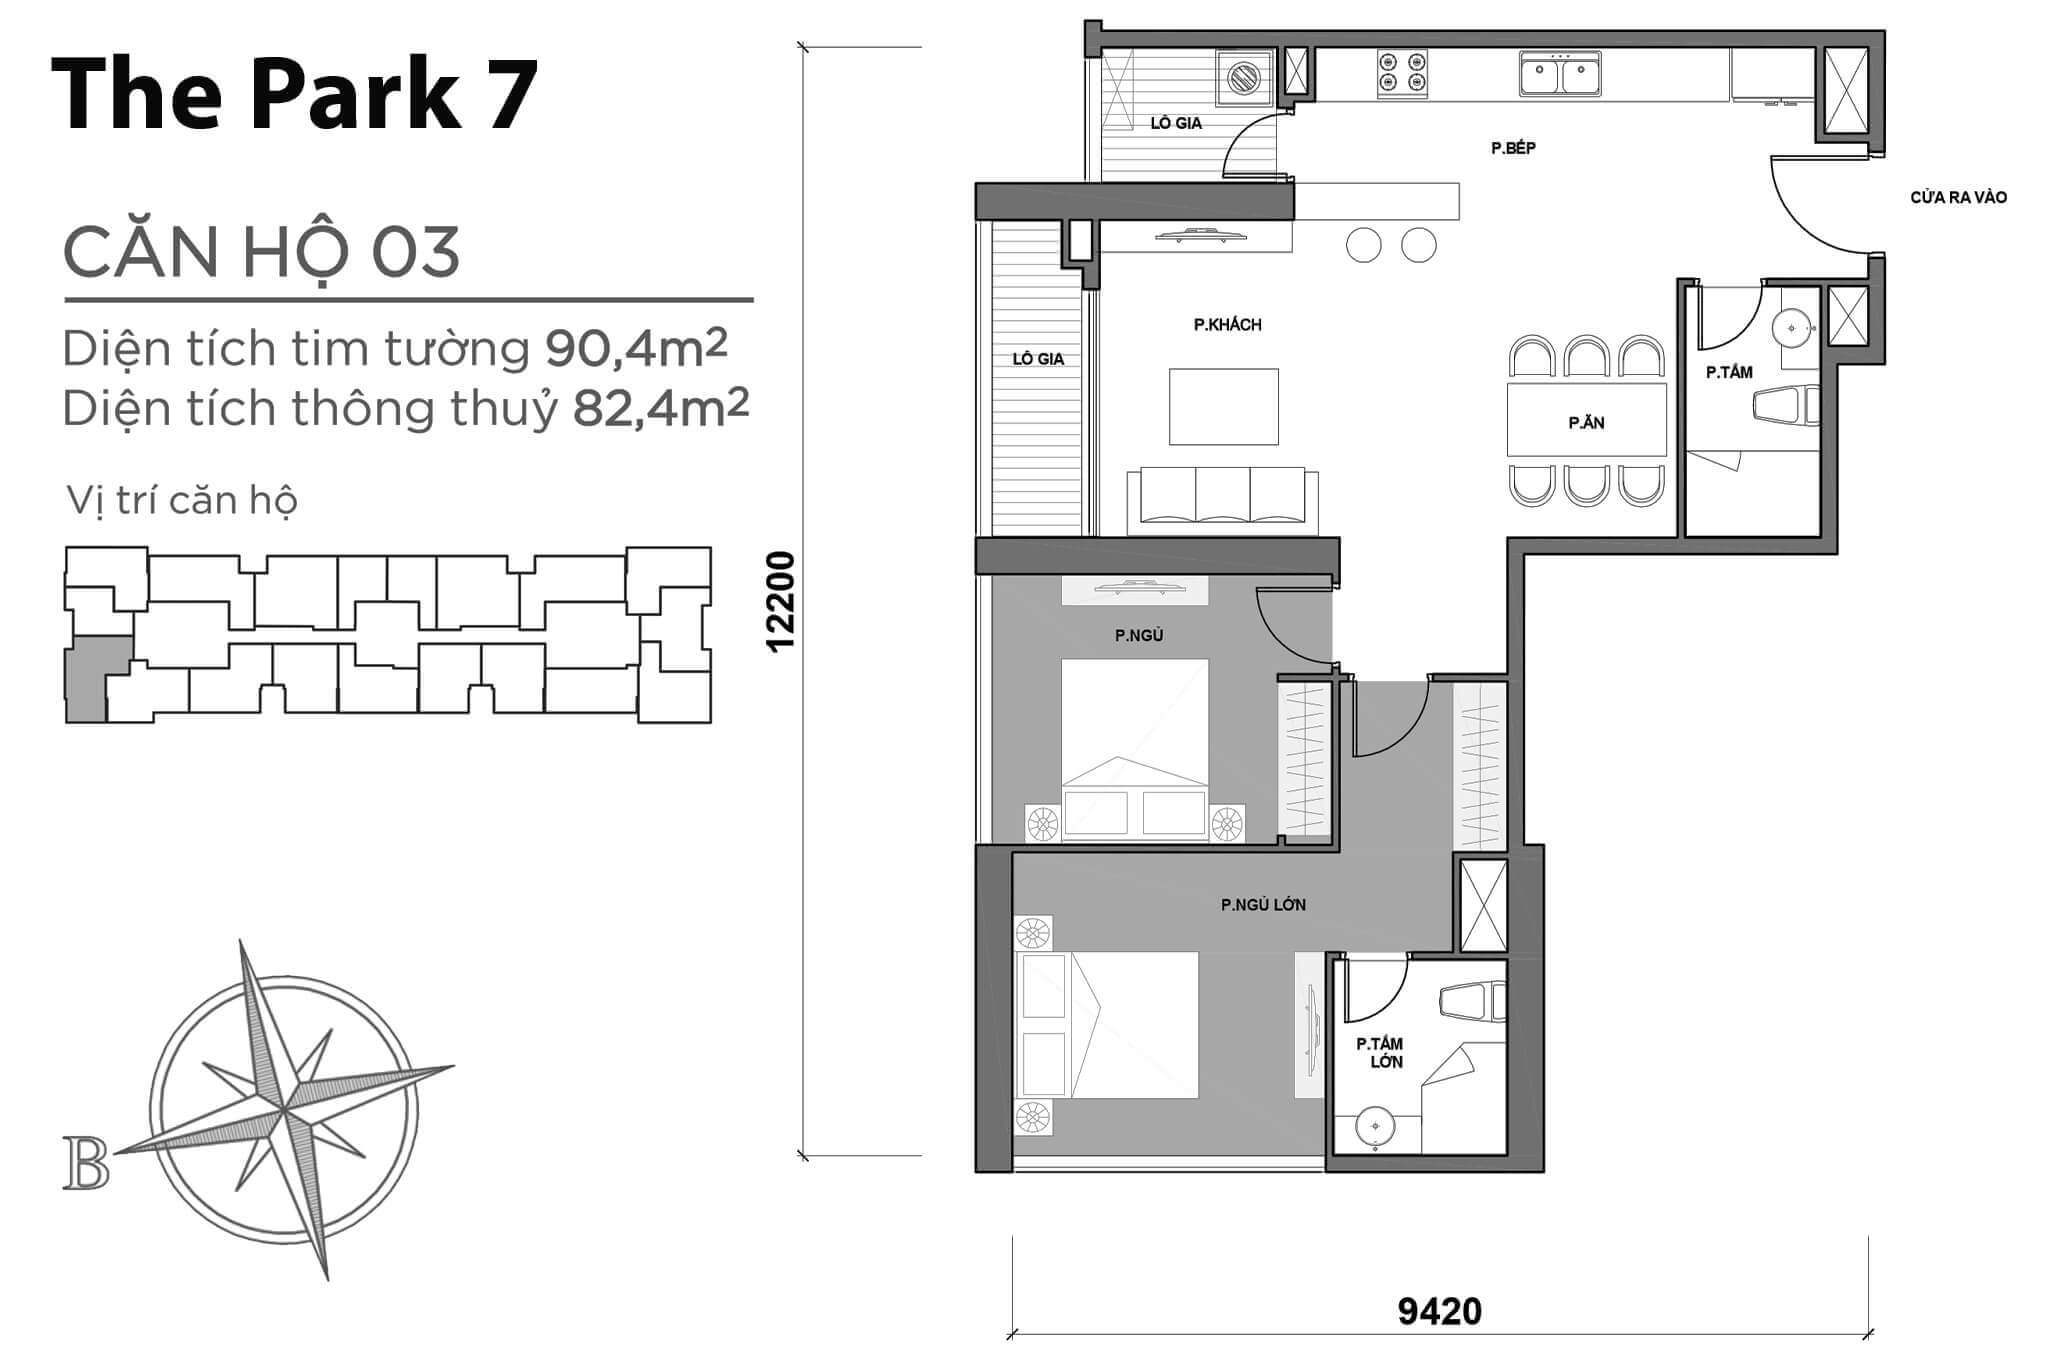 layout căn hộ số 03 tòa Park 7 P7-03